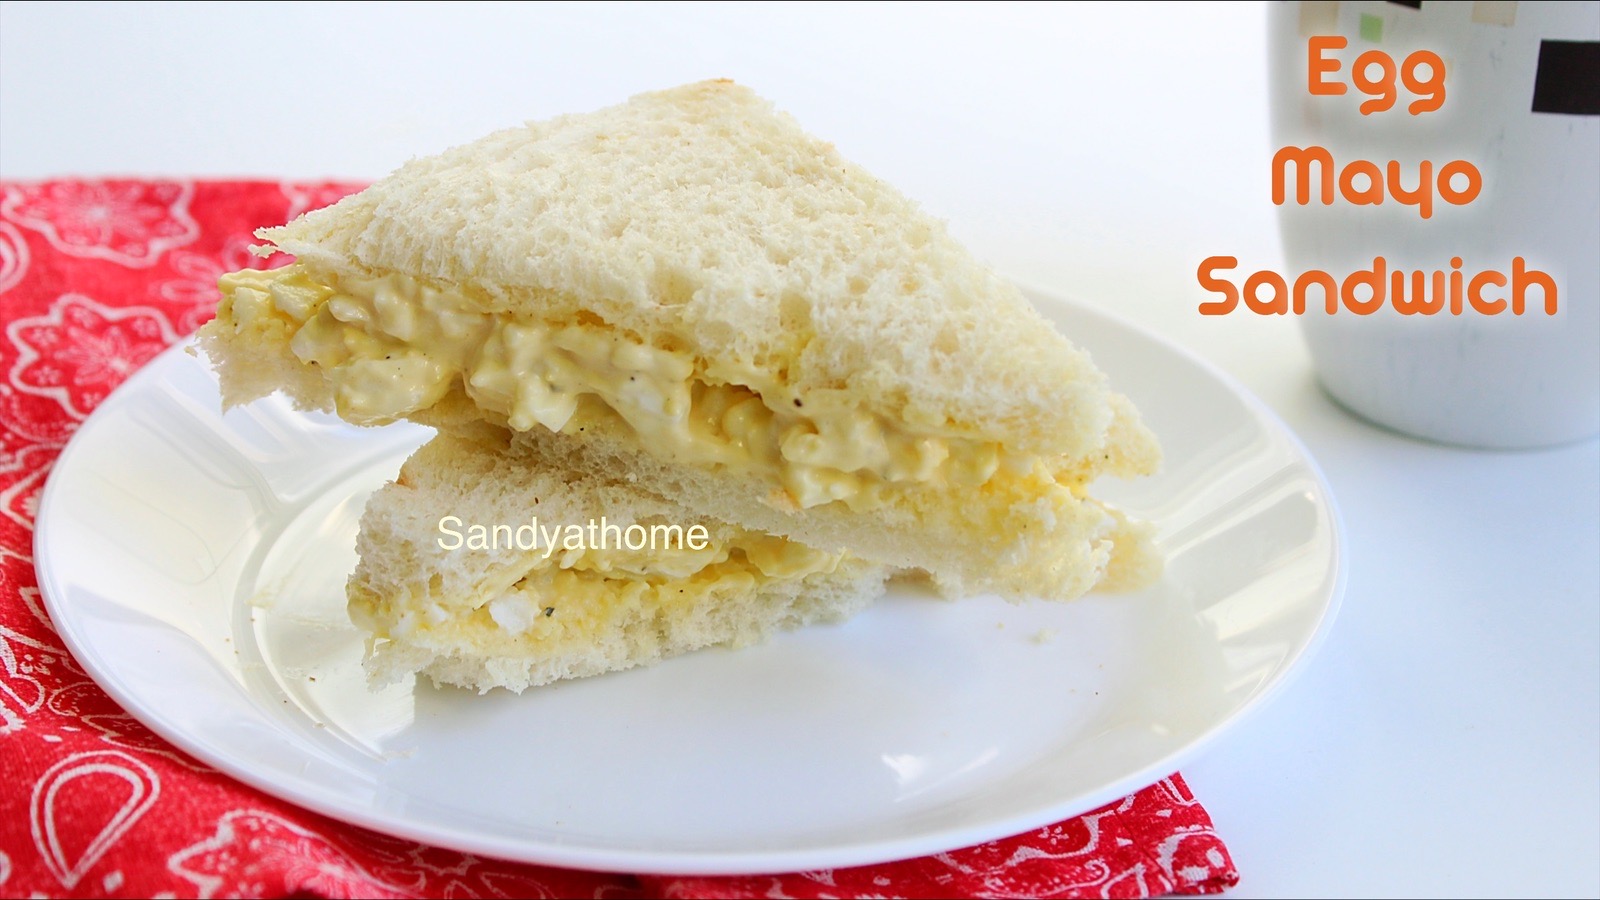 egg mayo sandwich, mayo egg sandwich, egg sandwich, mayo sandwich